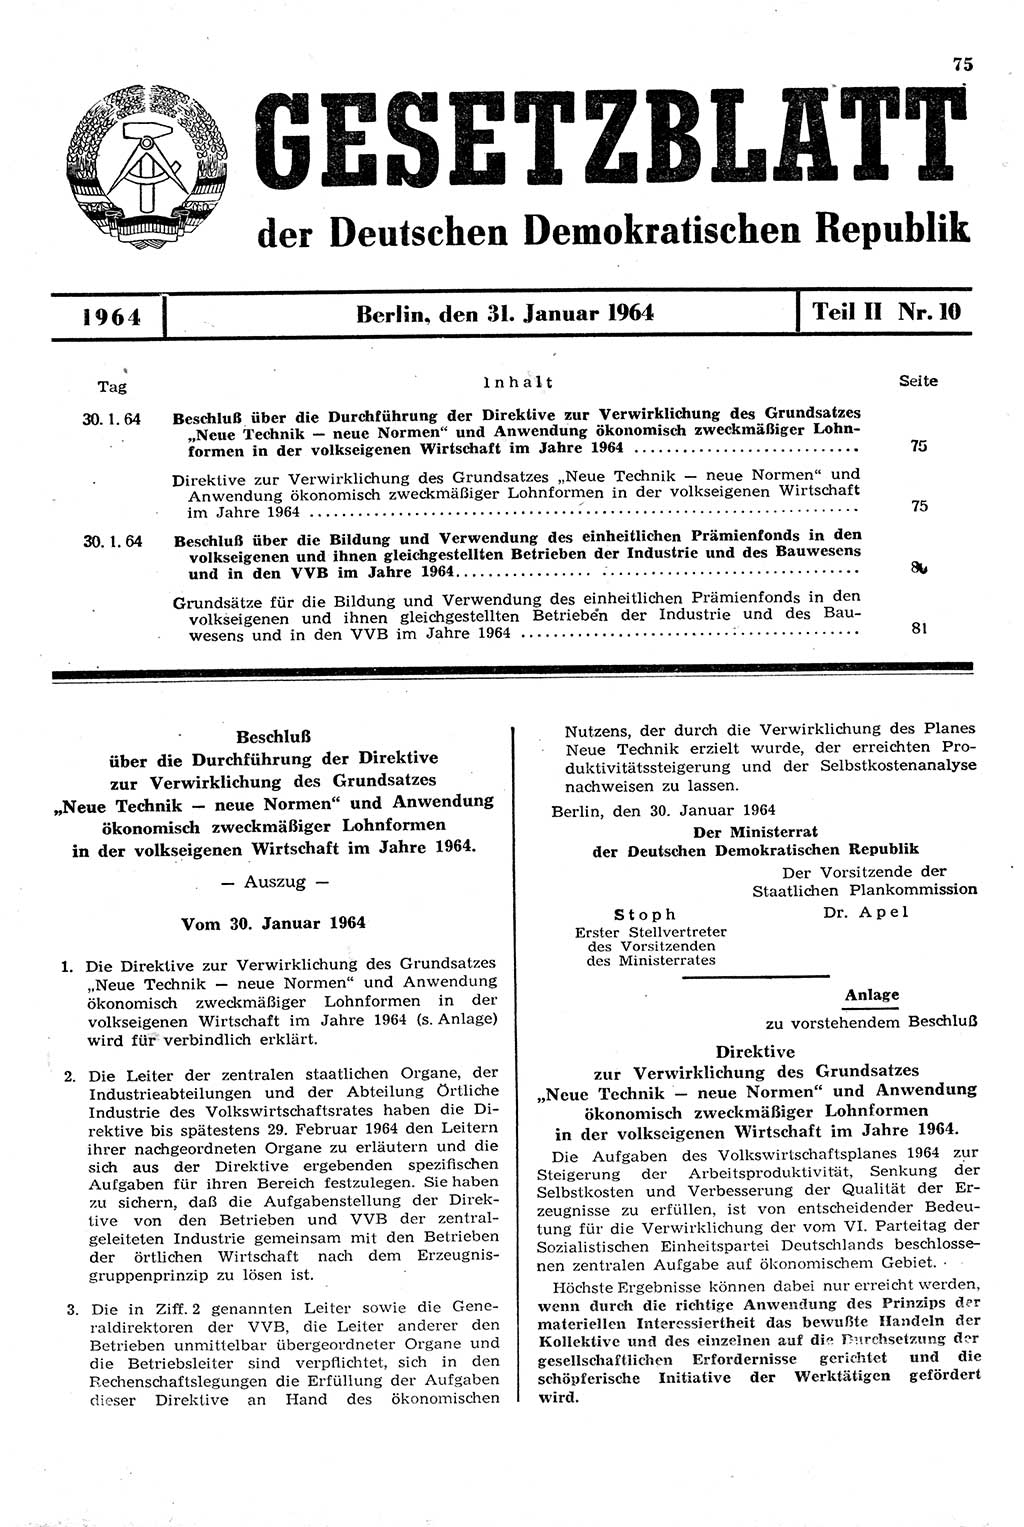 Gesetzblatt (GBl.) der Deutschen Demokratischen Republik (DDR) Teil ⅠⅠ 1964, Seite 75 (GBl. DDR ⅠⅠ 1964, S. 75)